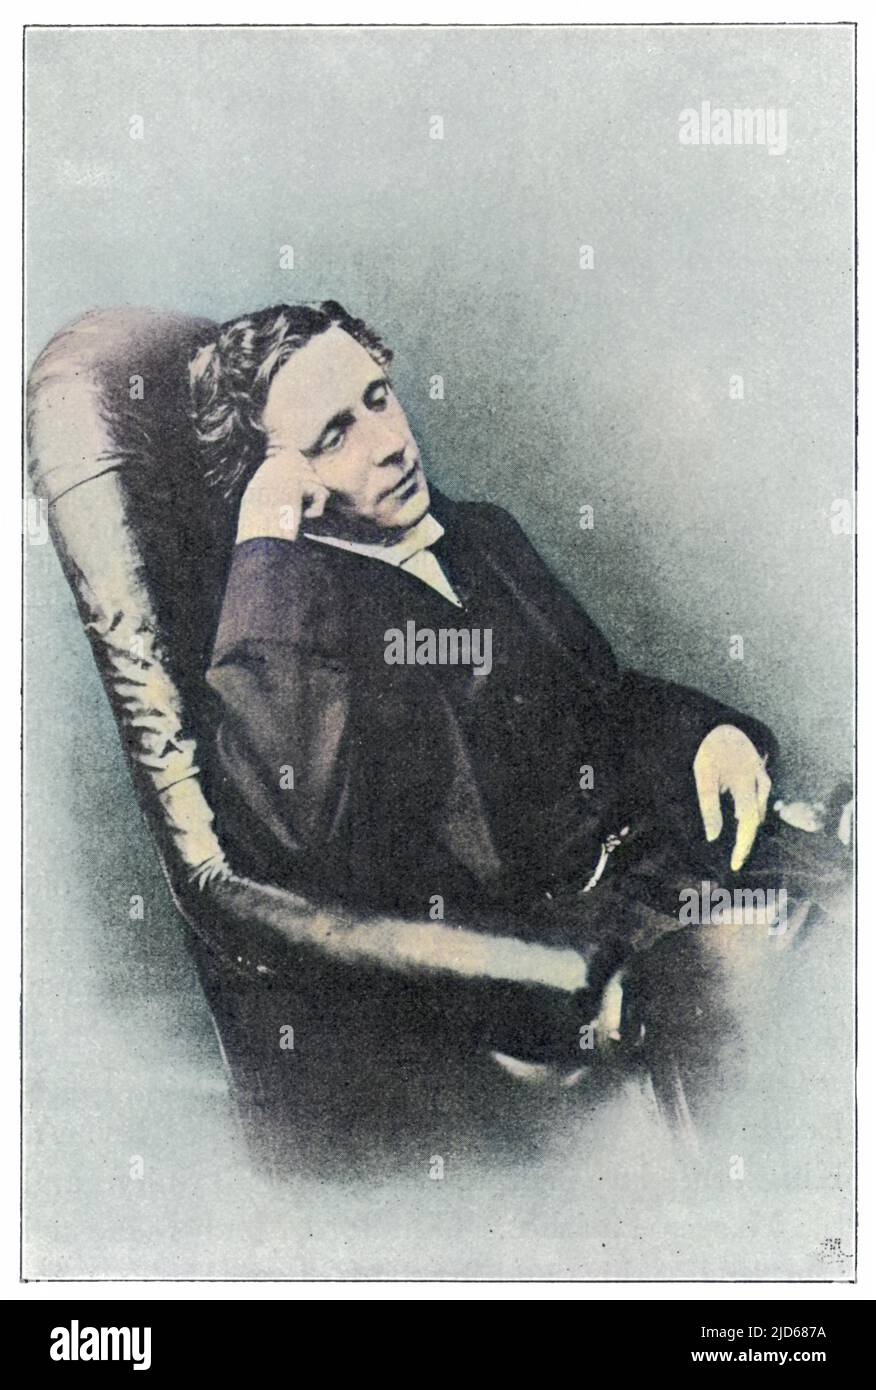 LEWIS CARROLL alias CHARLES LUTWIDGE DODGSON (1832 - 1898), englischer Mathematiker, Geistlicher und Schriftsteller - Schöpfer von 'Alice'. Kolorierte Version von : 10072544 Stockfoto